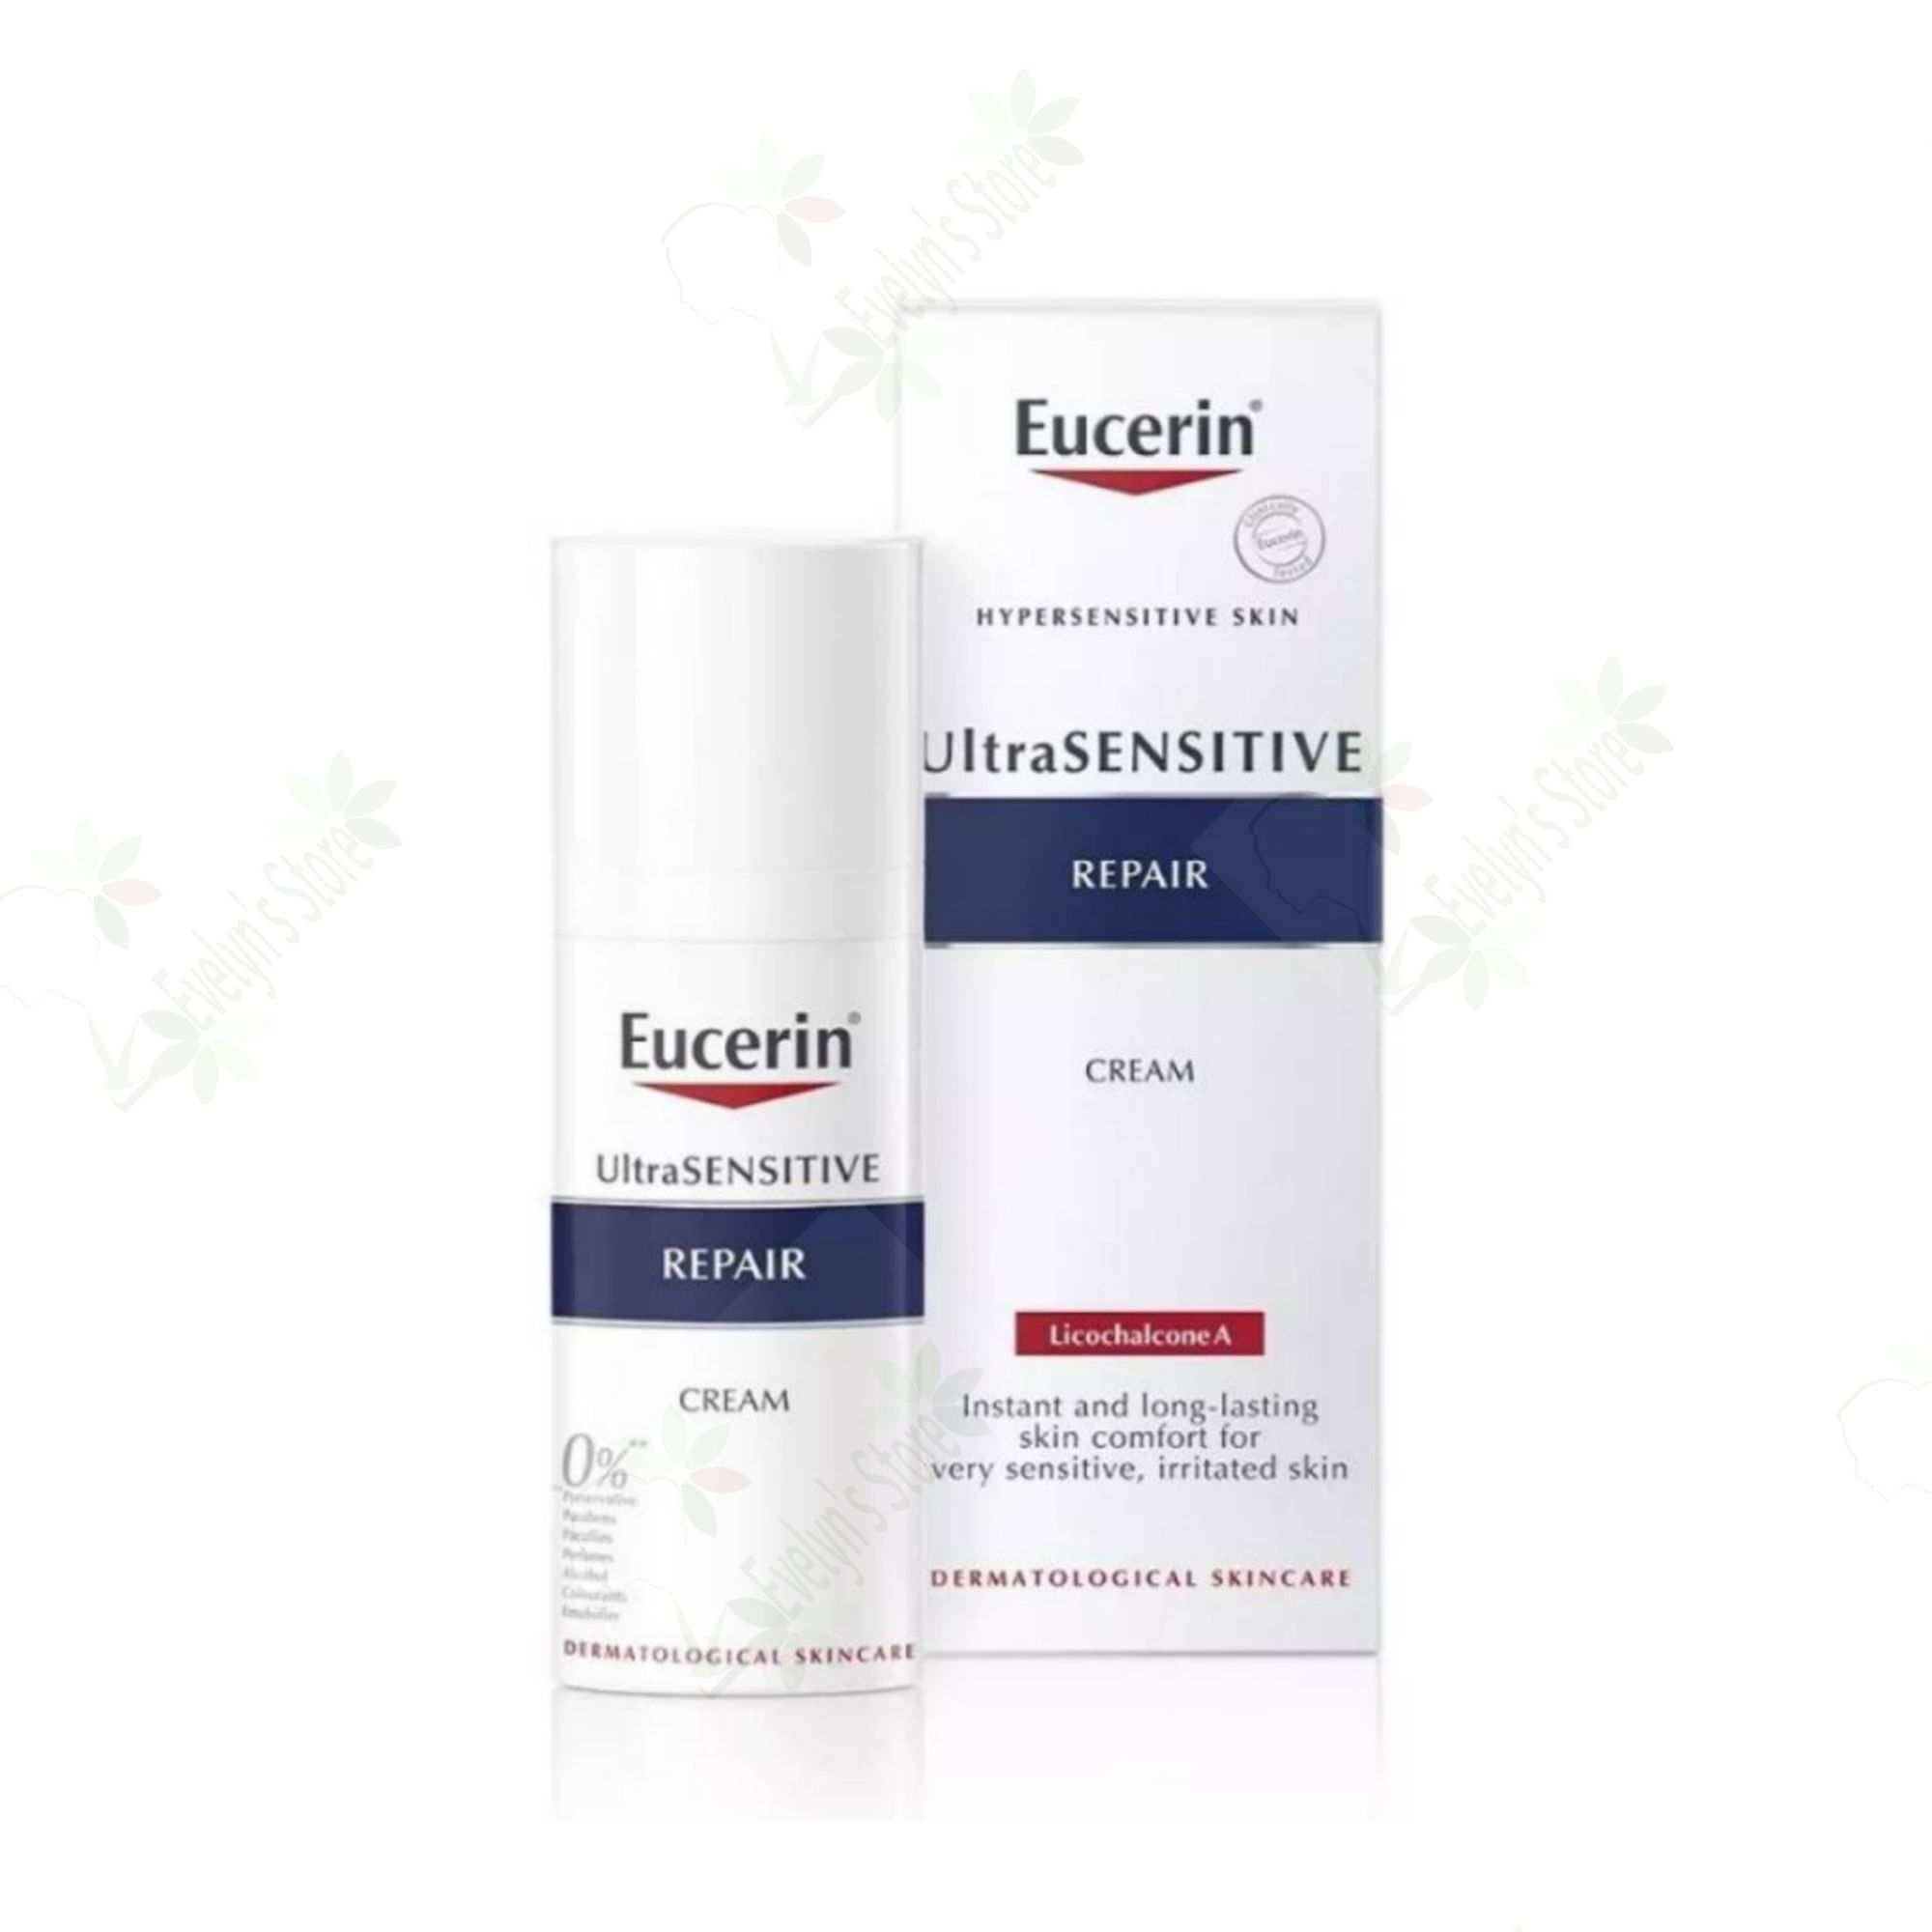 ยูเซอริน อัลตร้าเซนซิทีฟ รีแพร์ ครีม 50มล. (รีแพร์ ครีม) Eucerin UltraSENSITIVE Repair Cream 50ml.